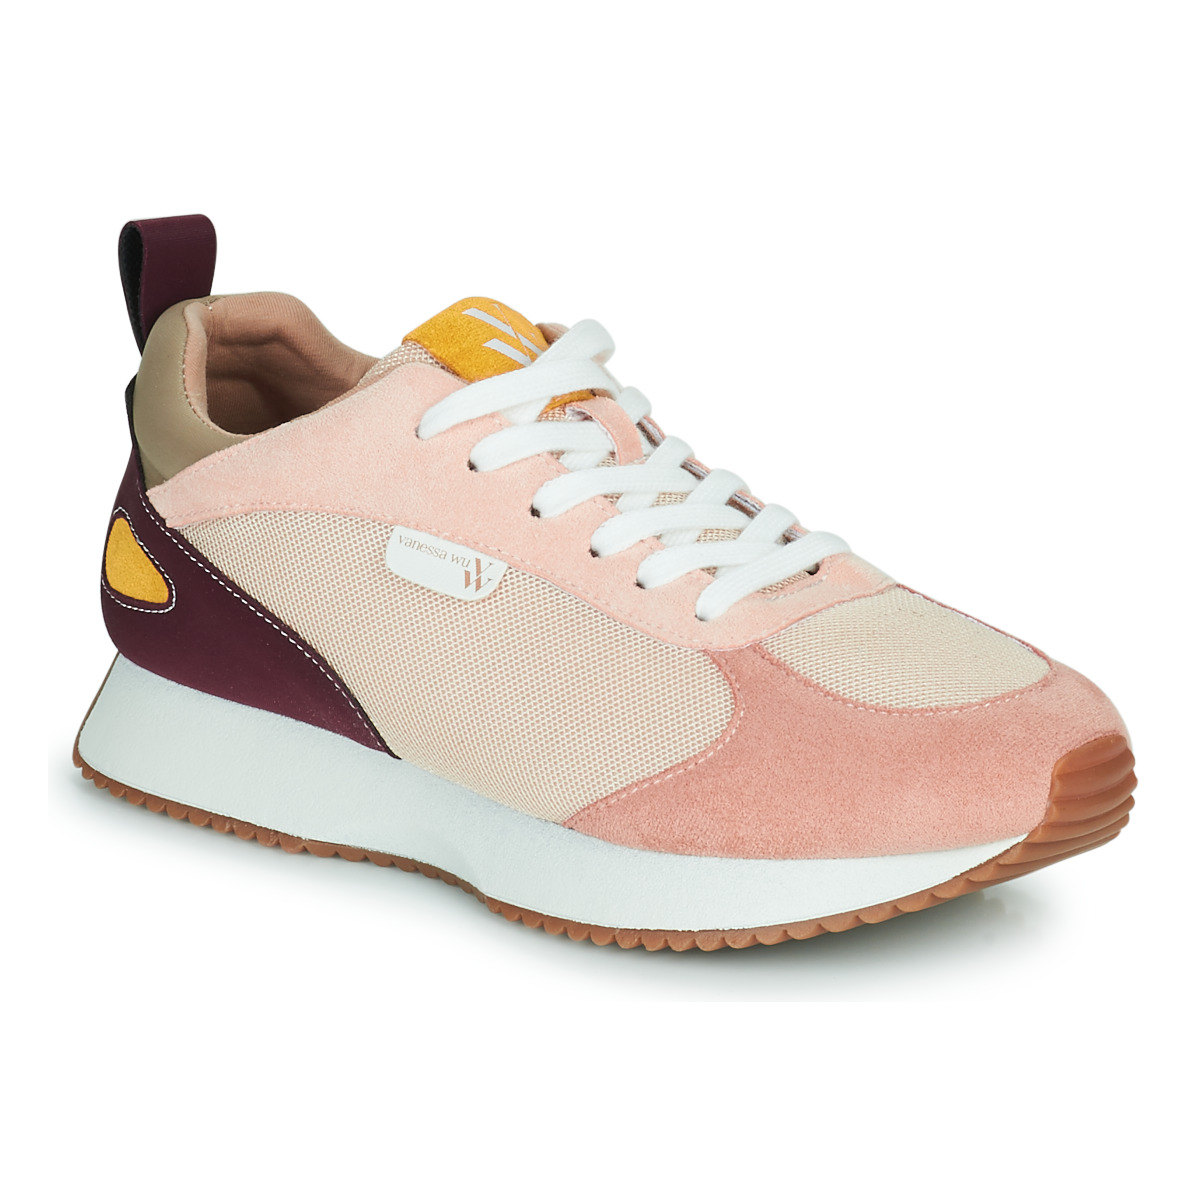 Sko Dame Lave sneakers Vanessa Wu  Beige / Rød / Pink